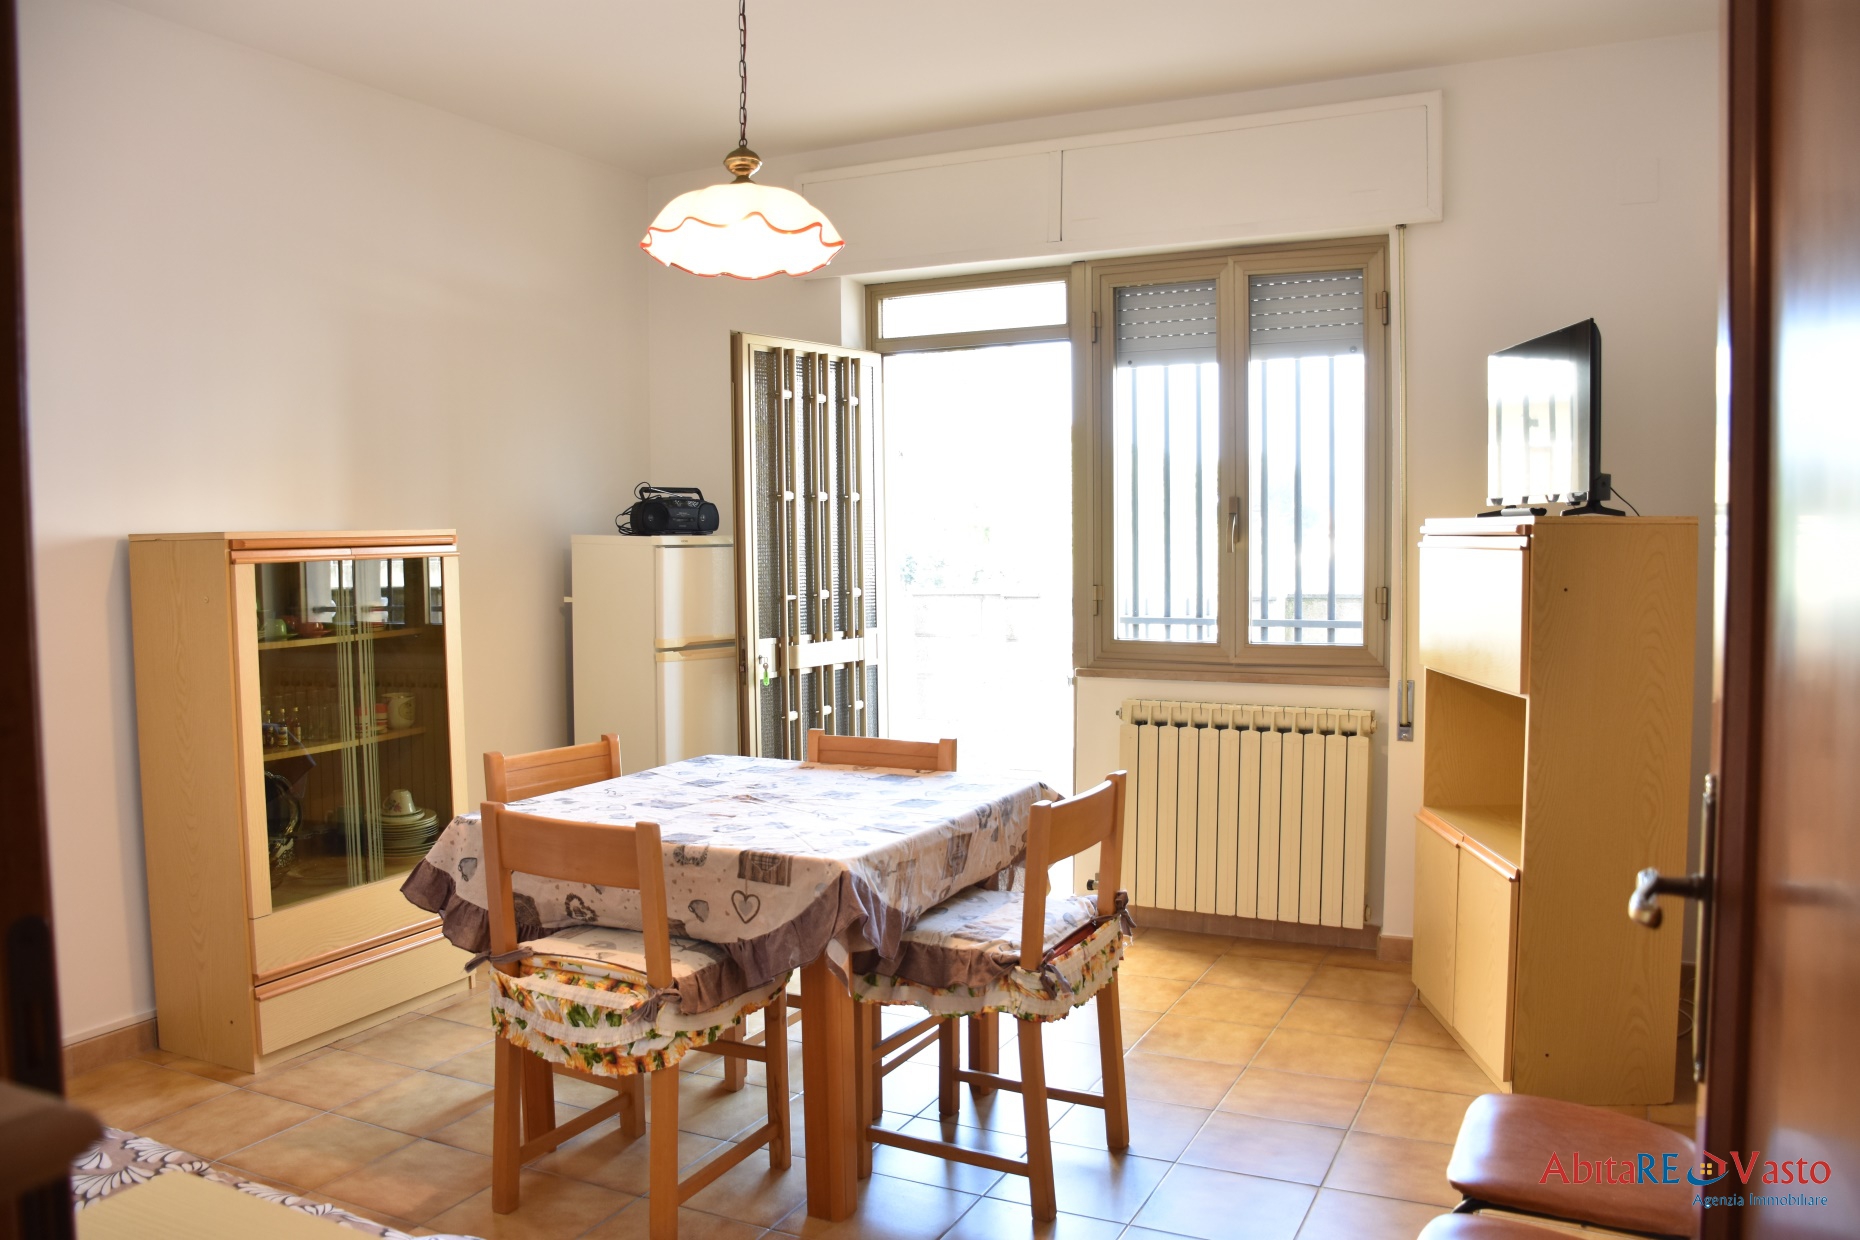 Appartamento in vendita a Vasto, 4 locali, prezzo € 82.000 | PortaleAgenzieImmobiliari.it